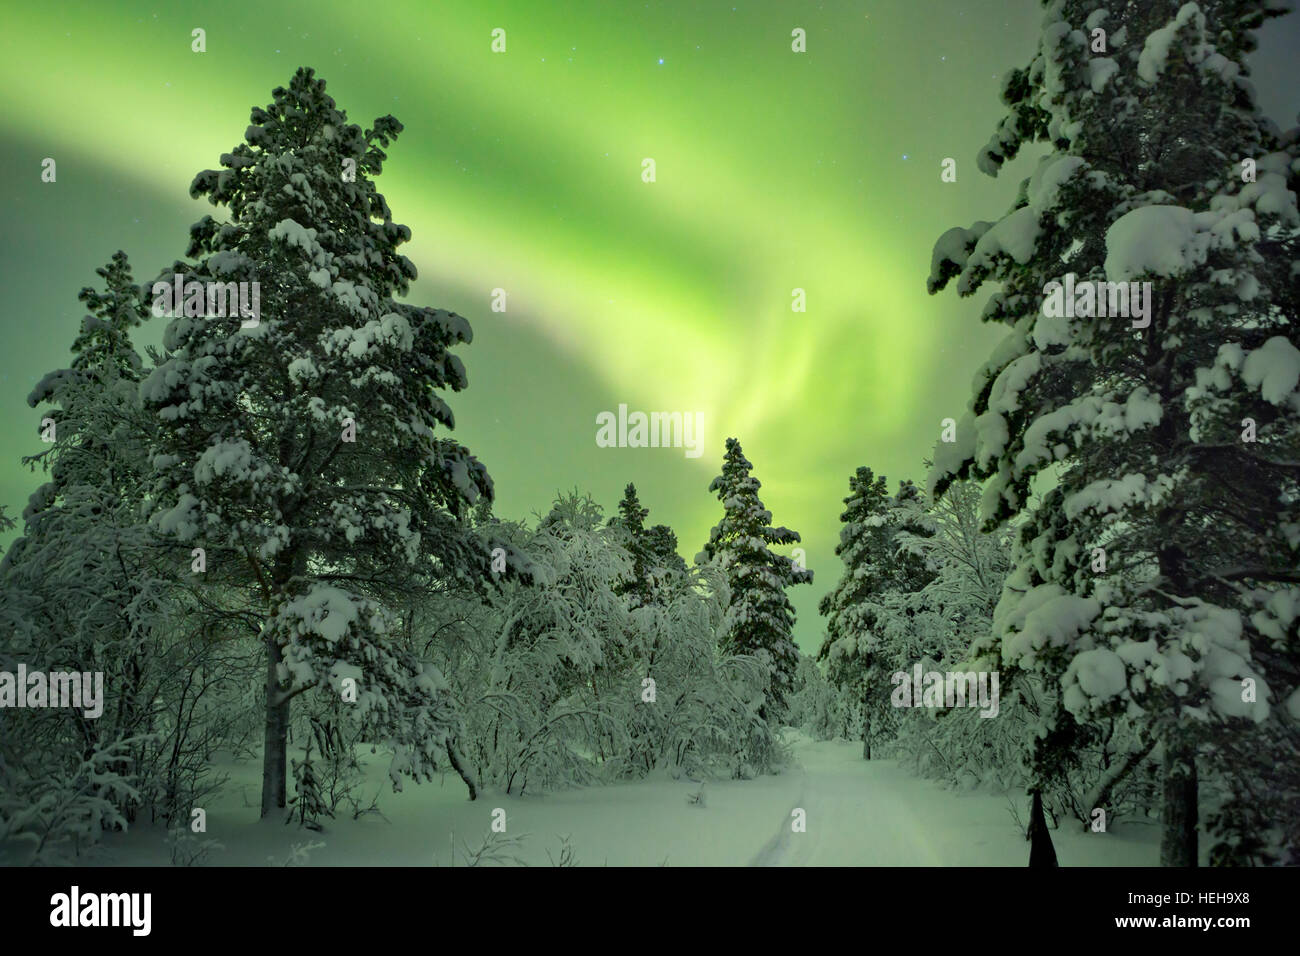 1.800+ Aurora Boreal Laponia Fotografías de stock, fotos e imágenes libres  de derechos - iStock